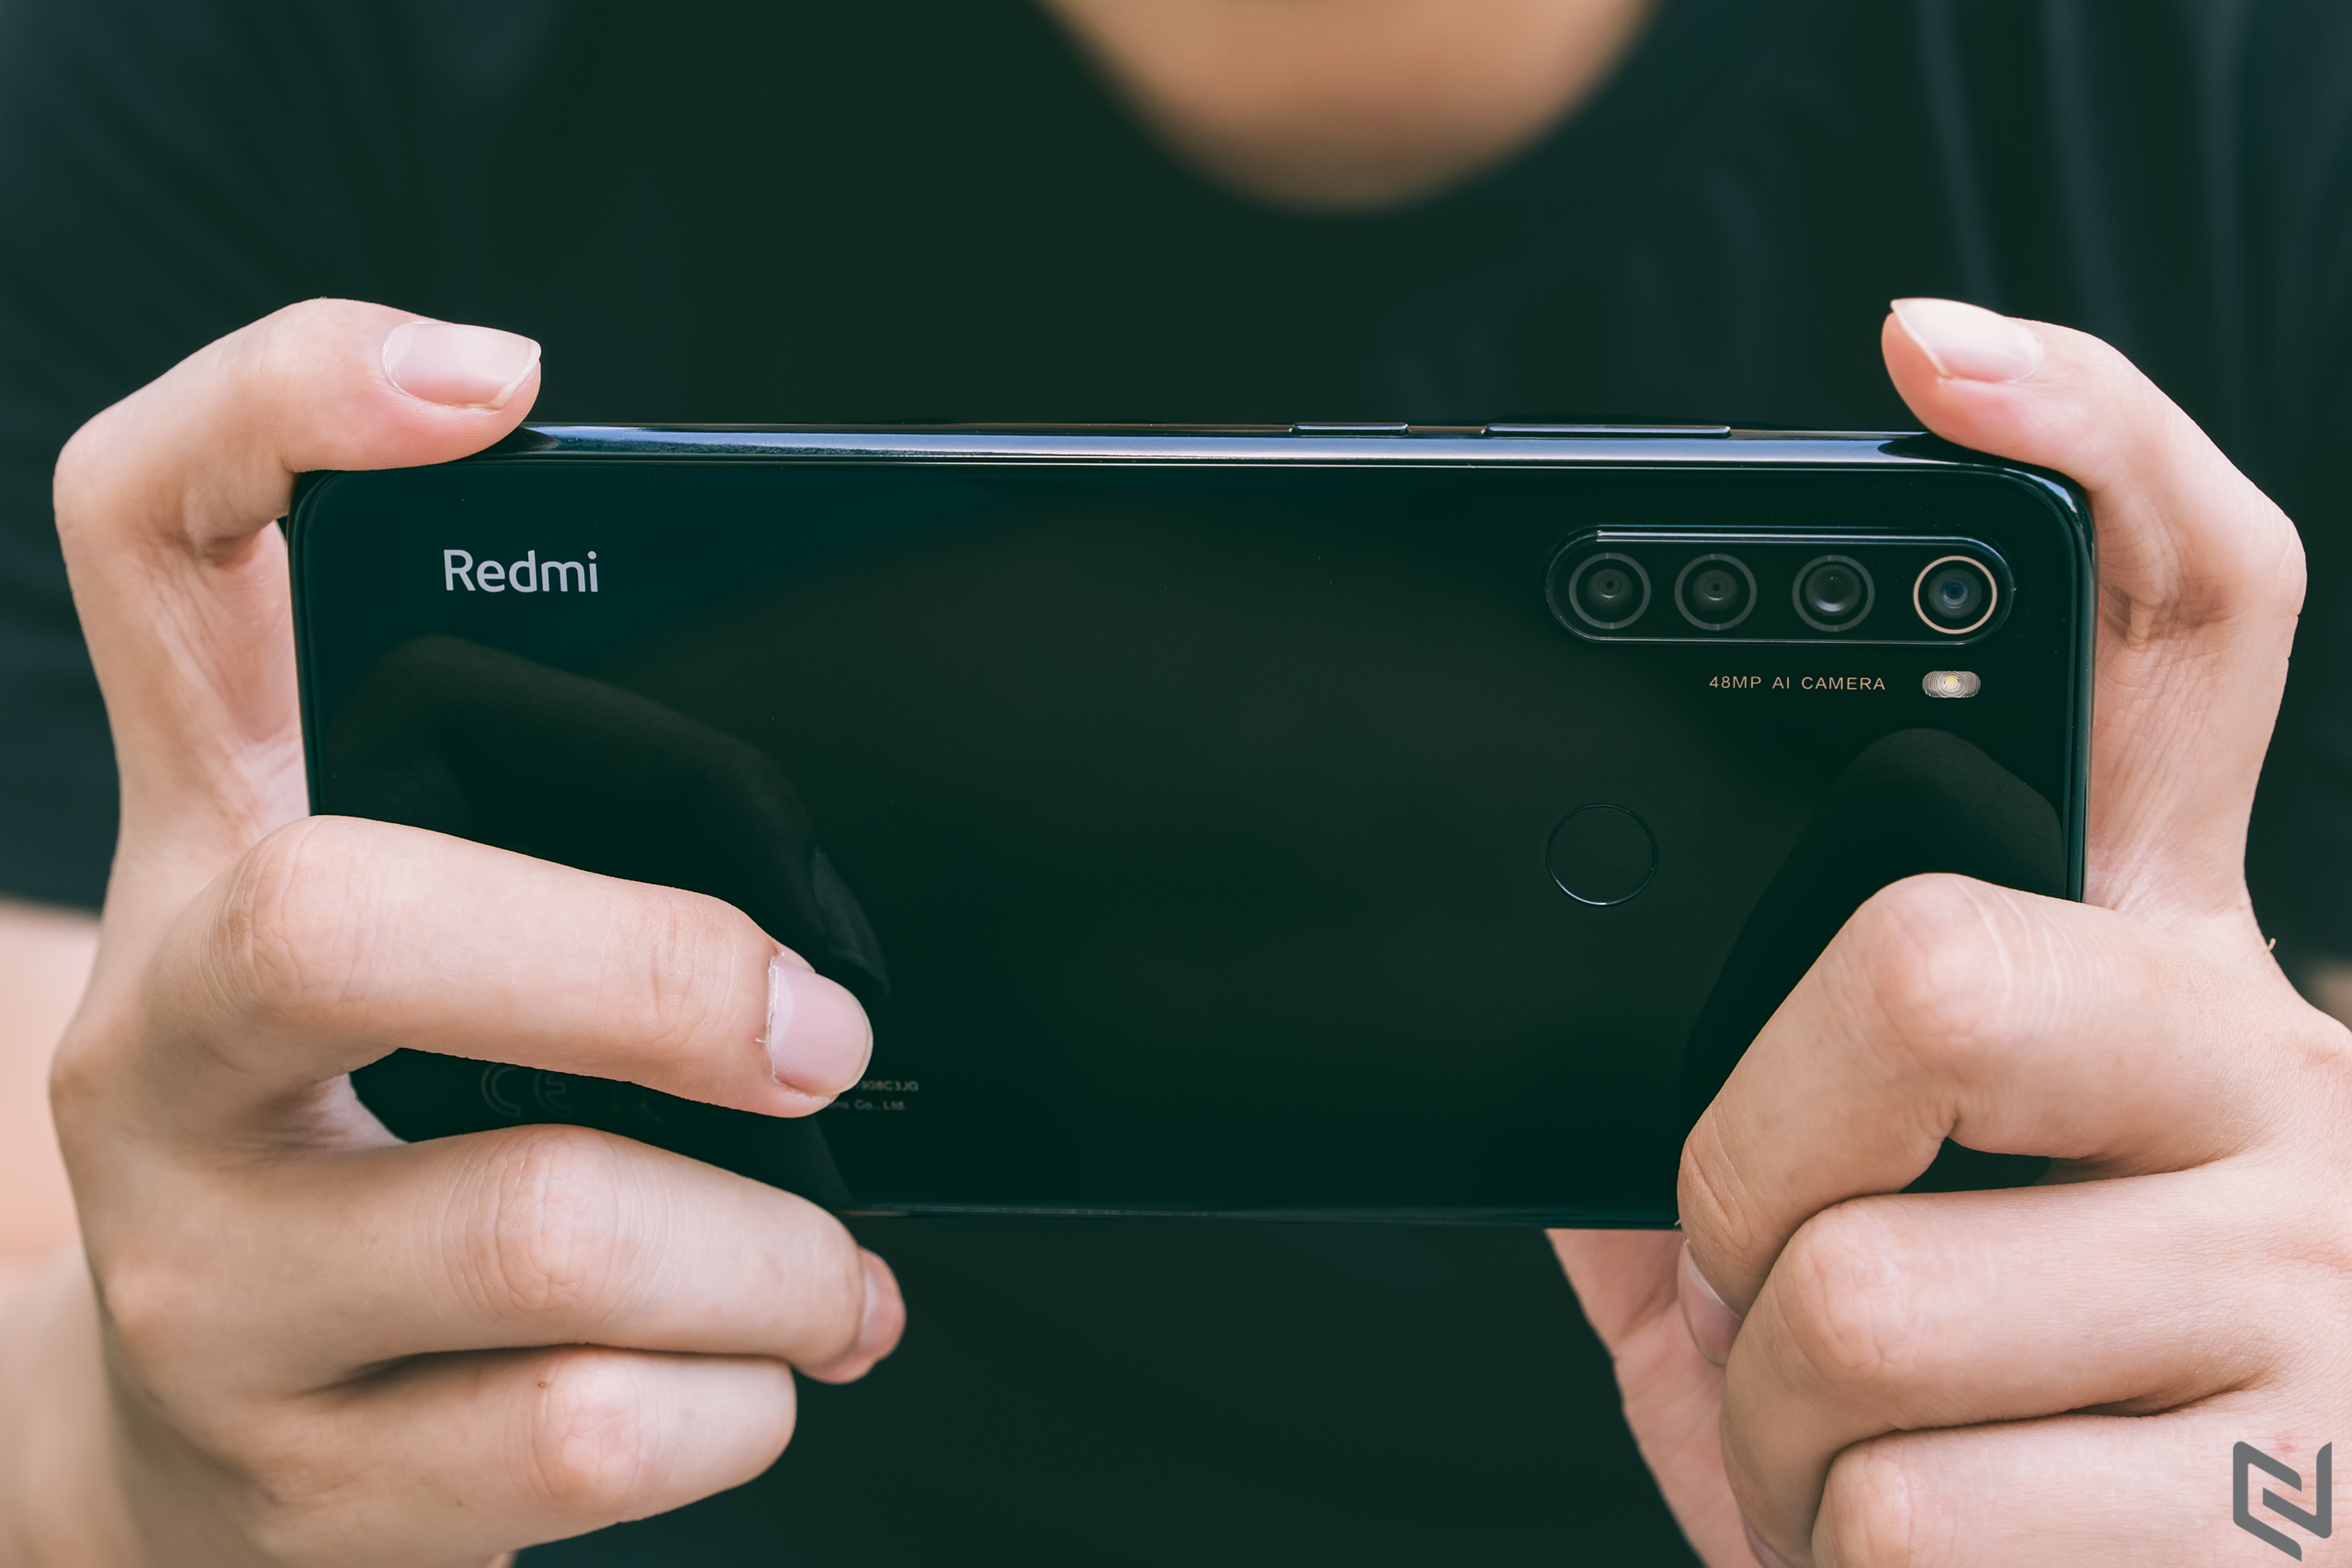 Redmi K30 với hỗ trợ 5G và màn hình đục lỗ sẽ ra mắt vào 10/12